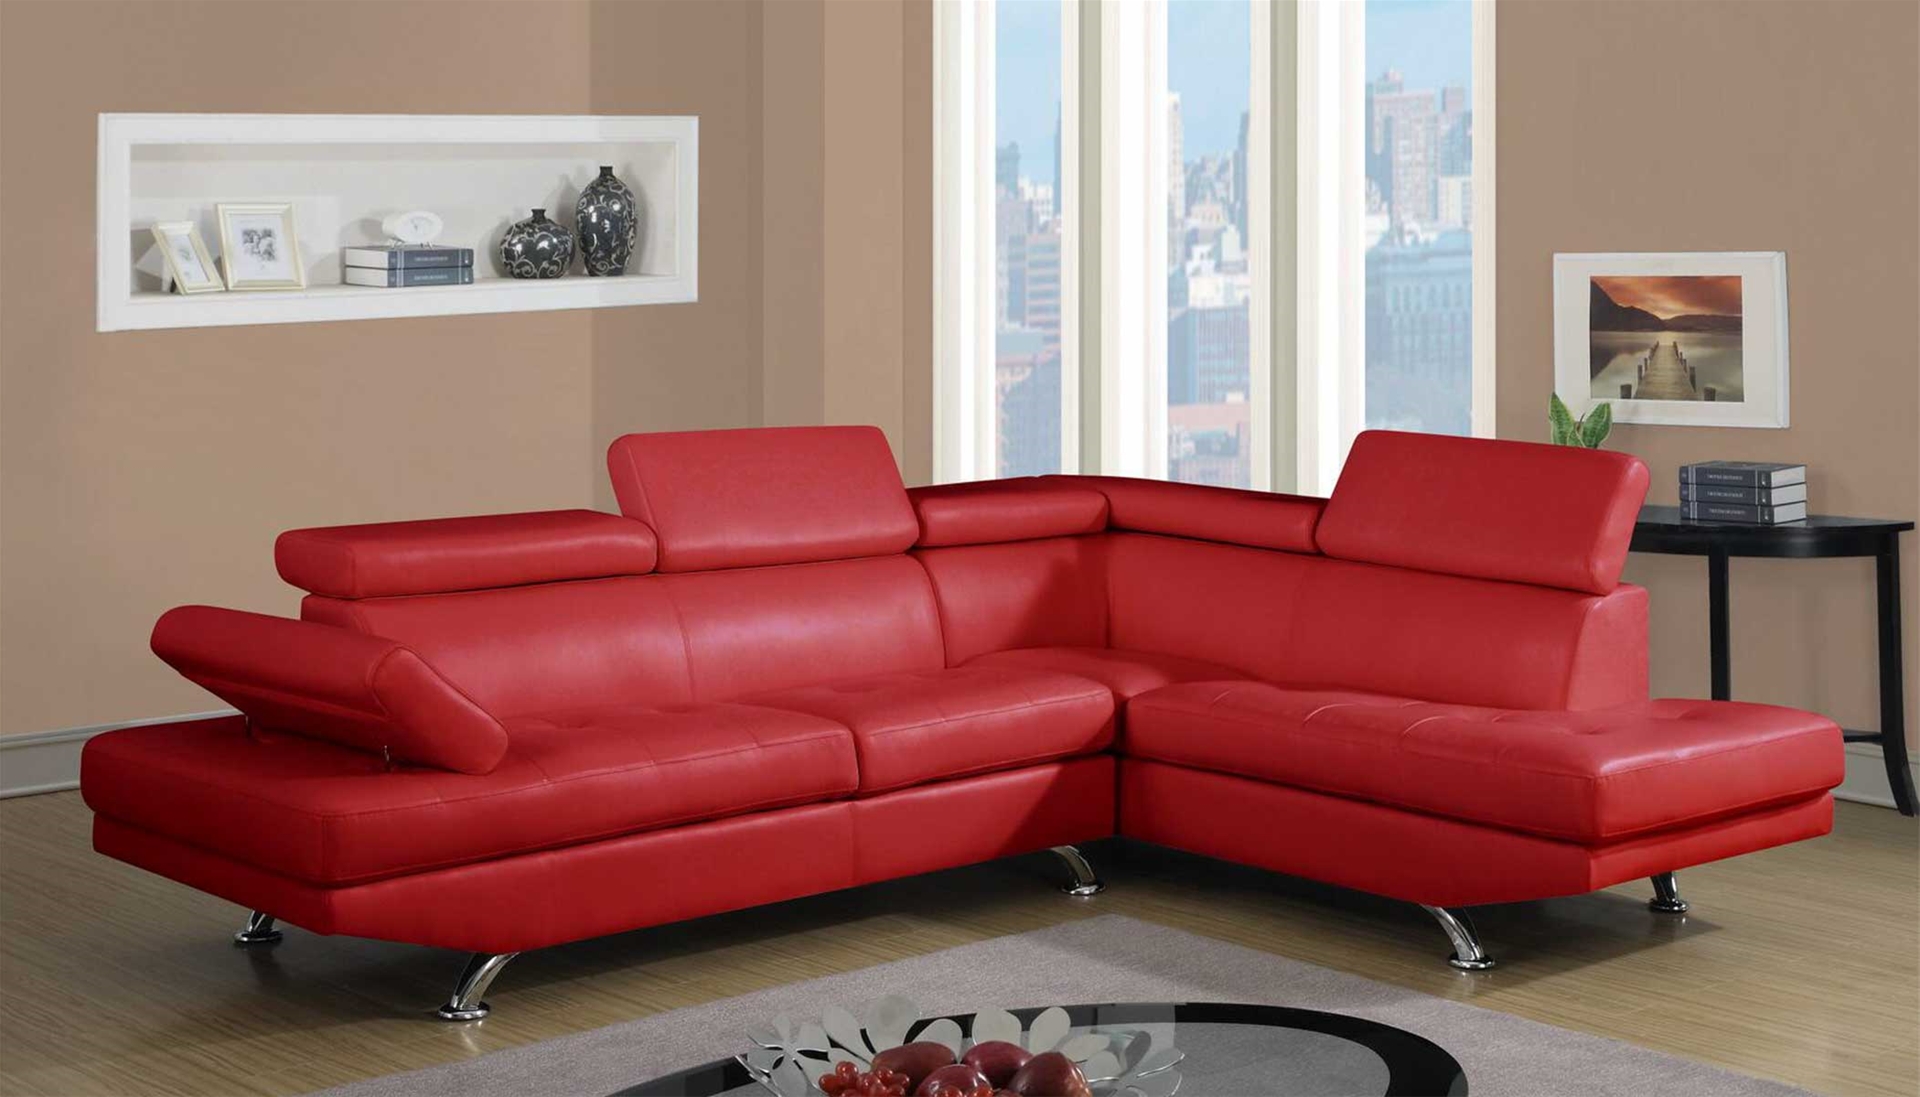 Ghế sofa văng bọc da chất lượng cao GHC-761